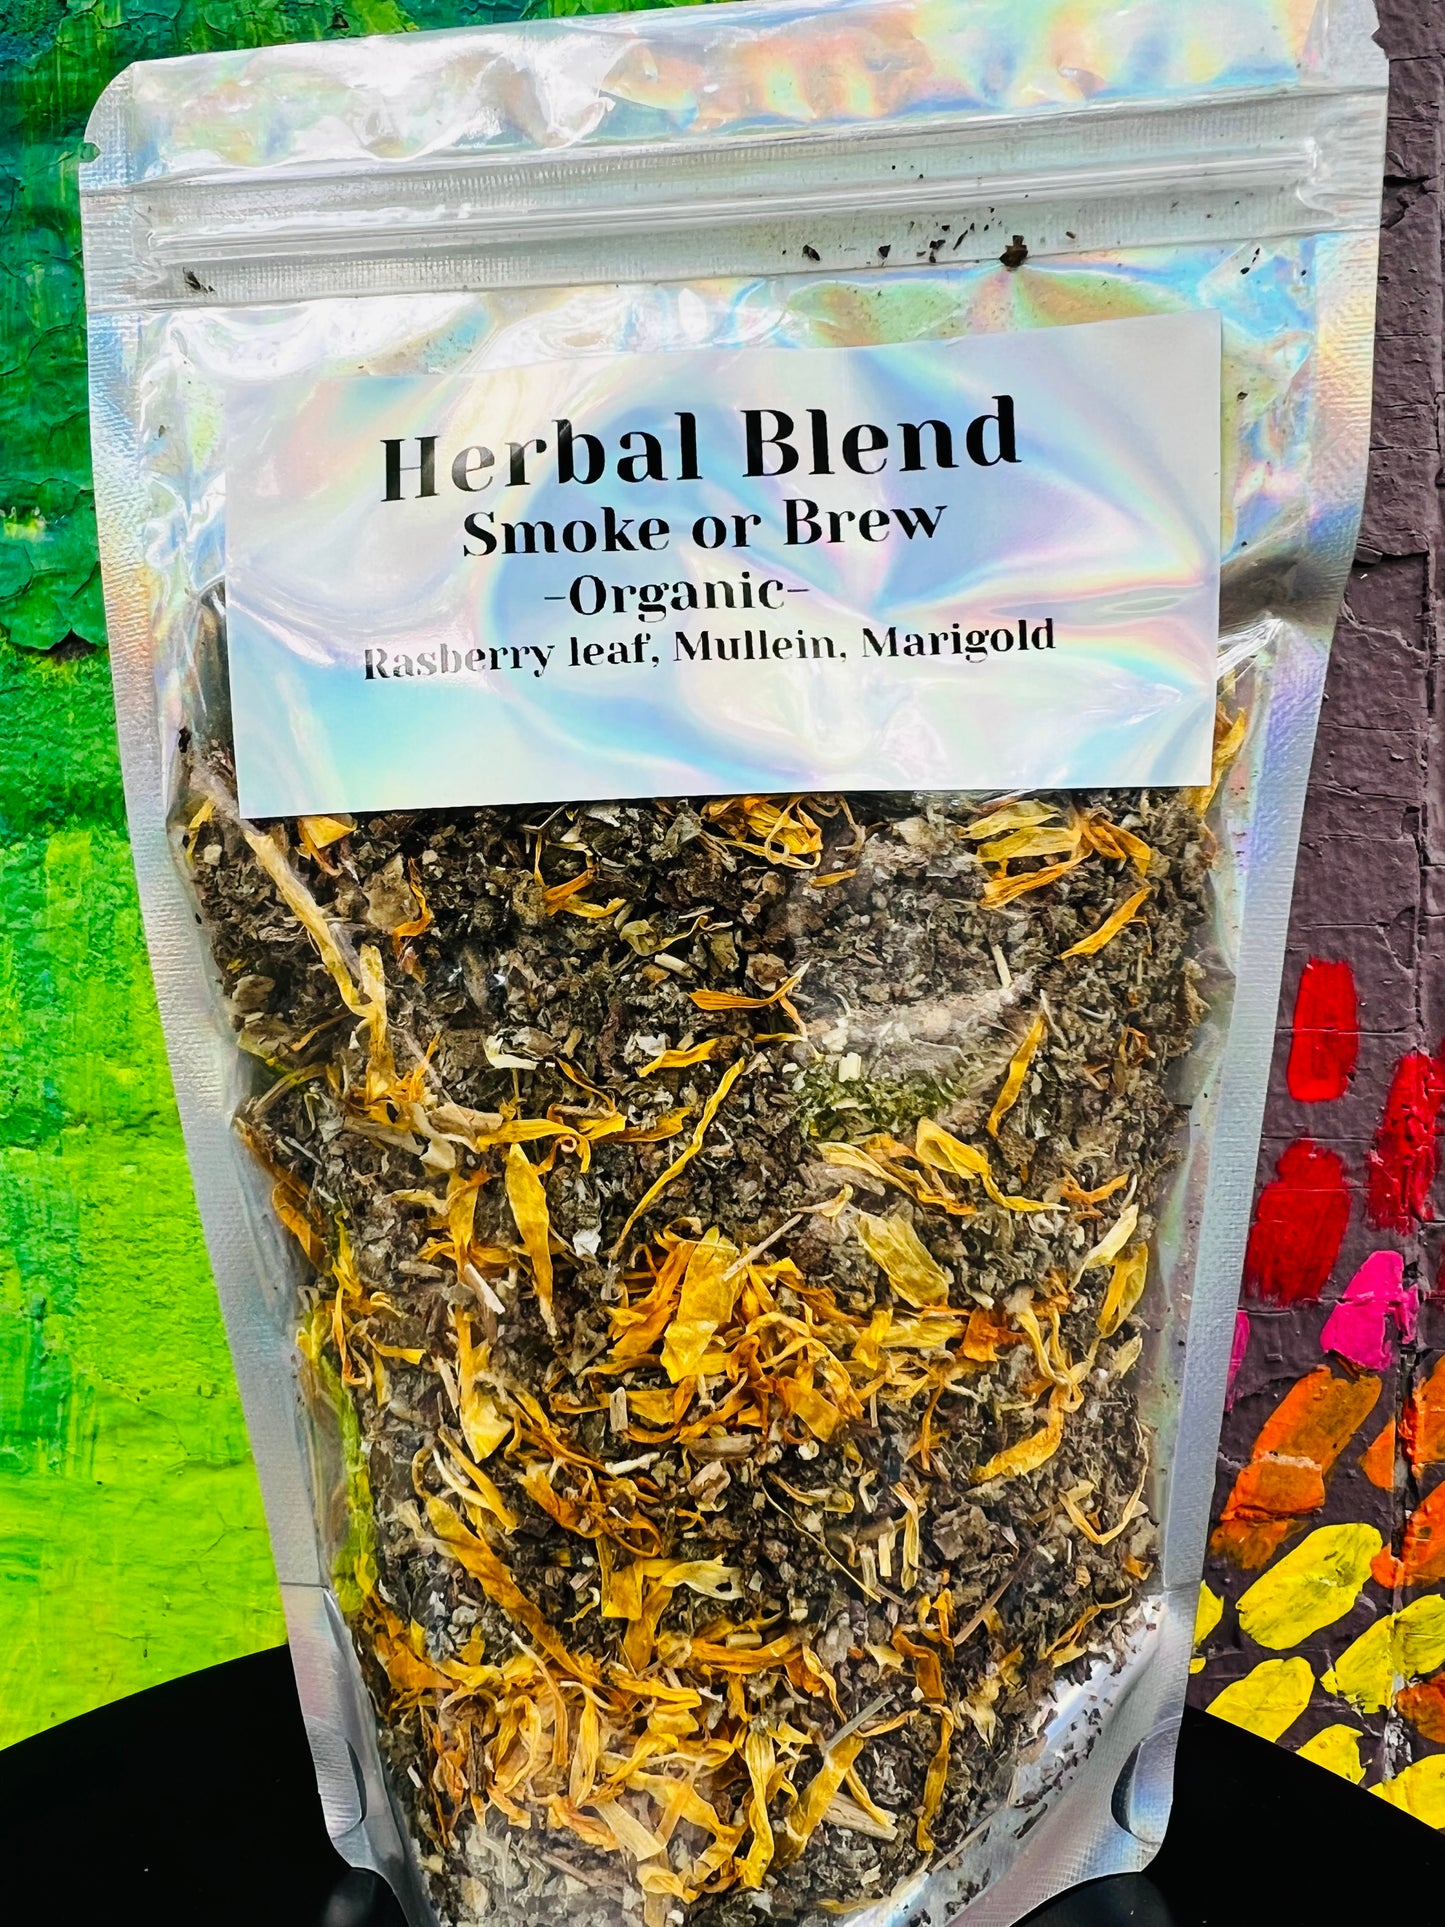 Herbal blend